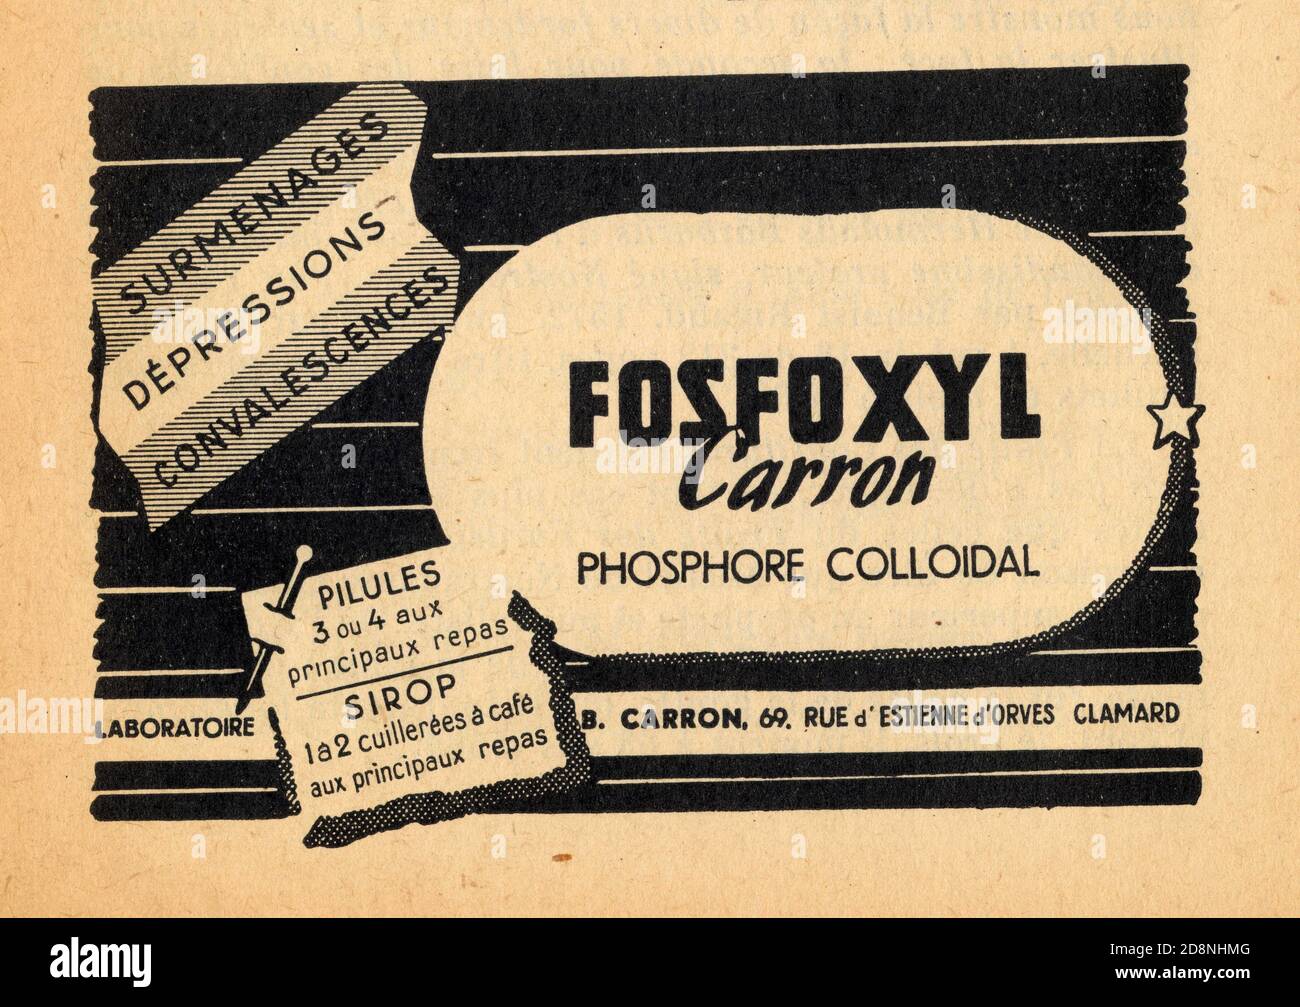 Publicité ancienne FOSFOXYL CARRON, phosphore colloidal. Stock Photo